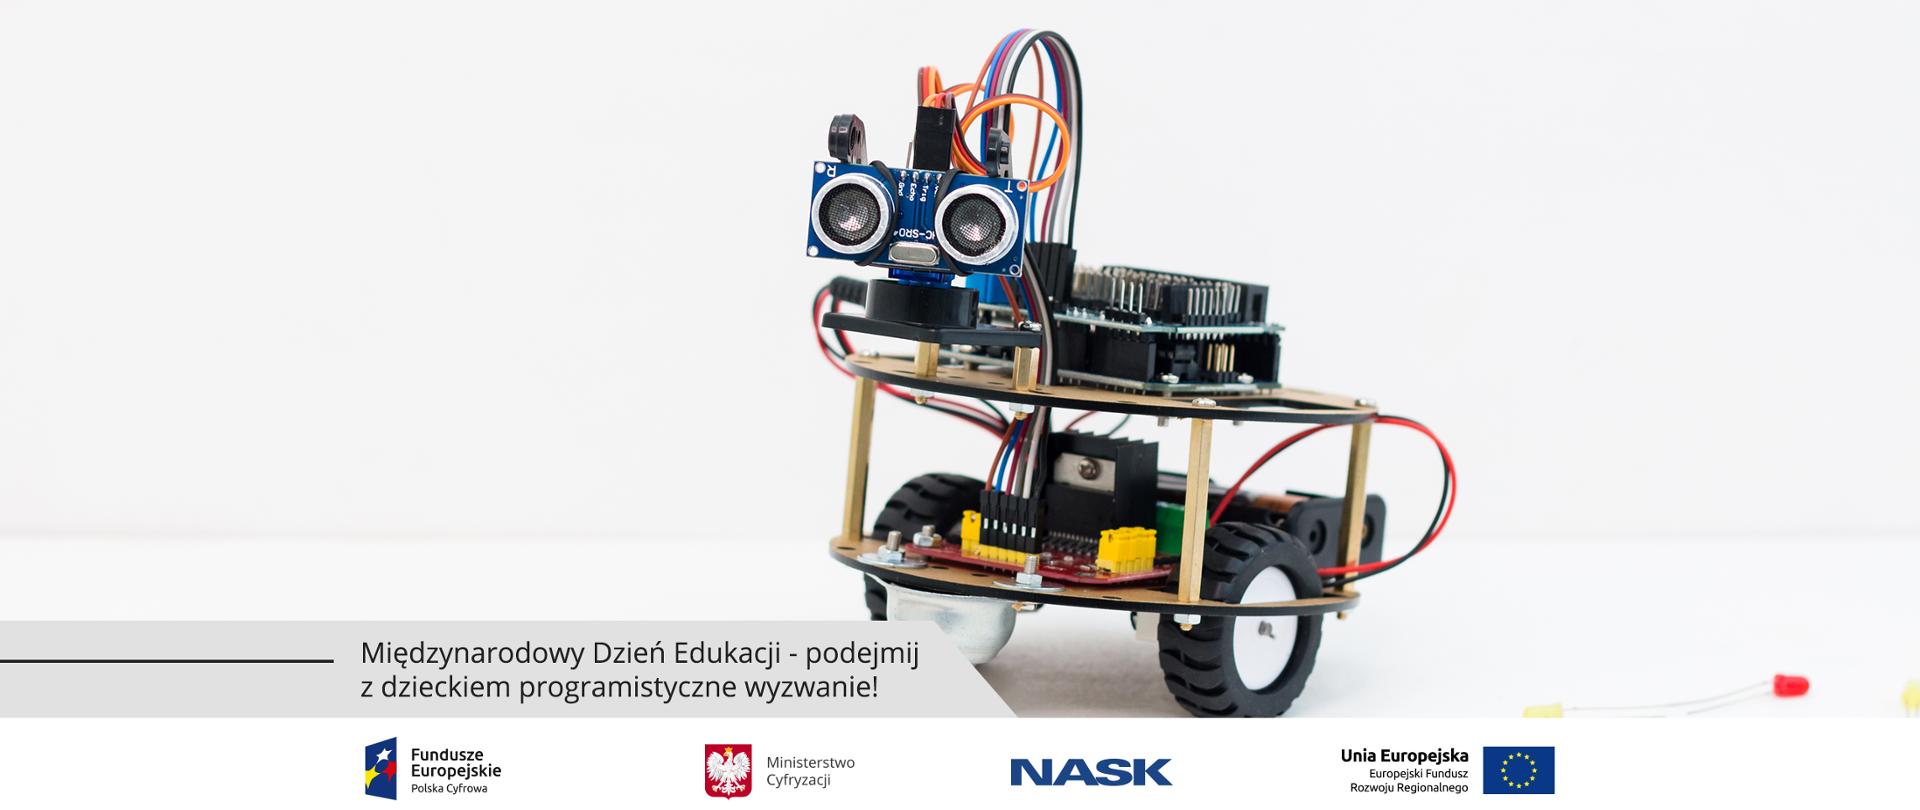 Grafika. Miniatura robota na dwóch kółkach. Poniżej napis: Międzynarodowy Dzień Edukacji - podejmij z dzieckiem programistyczne wyzwanie!